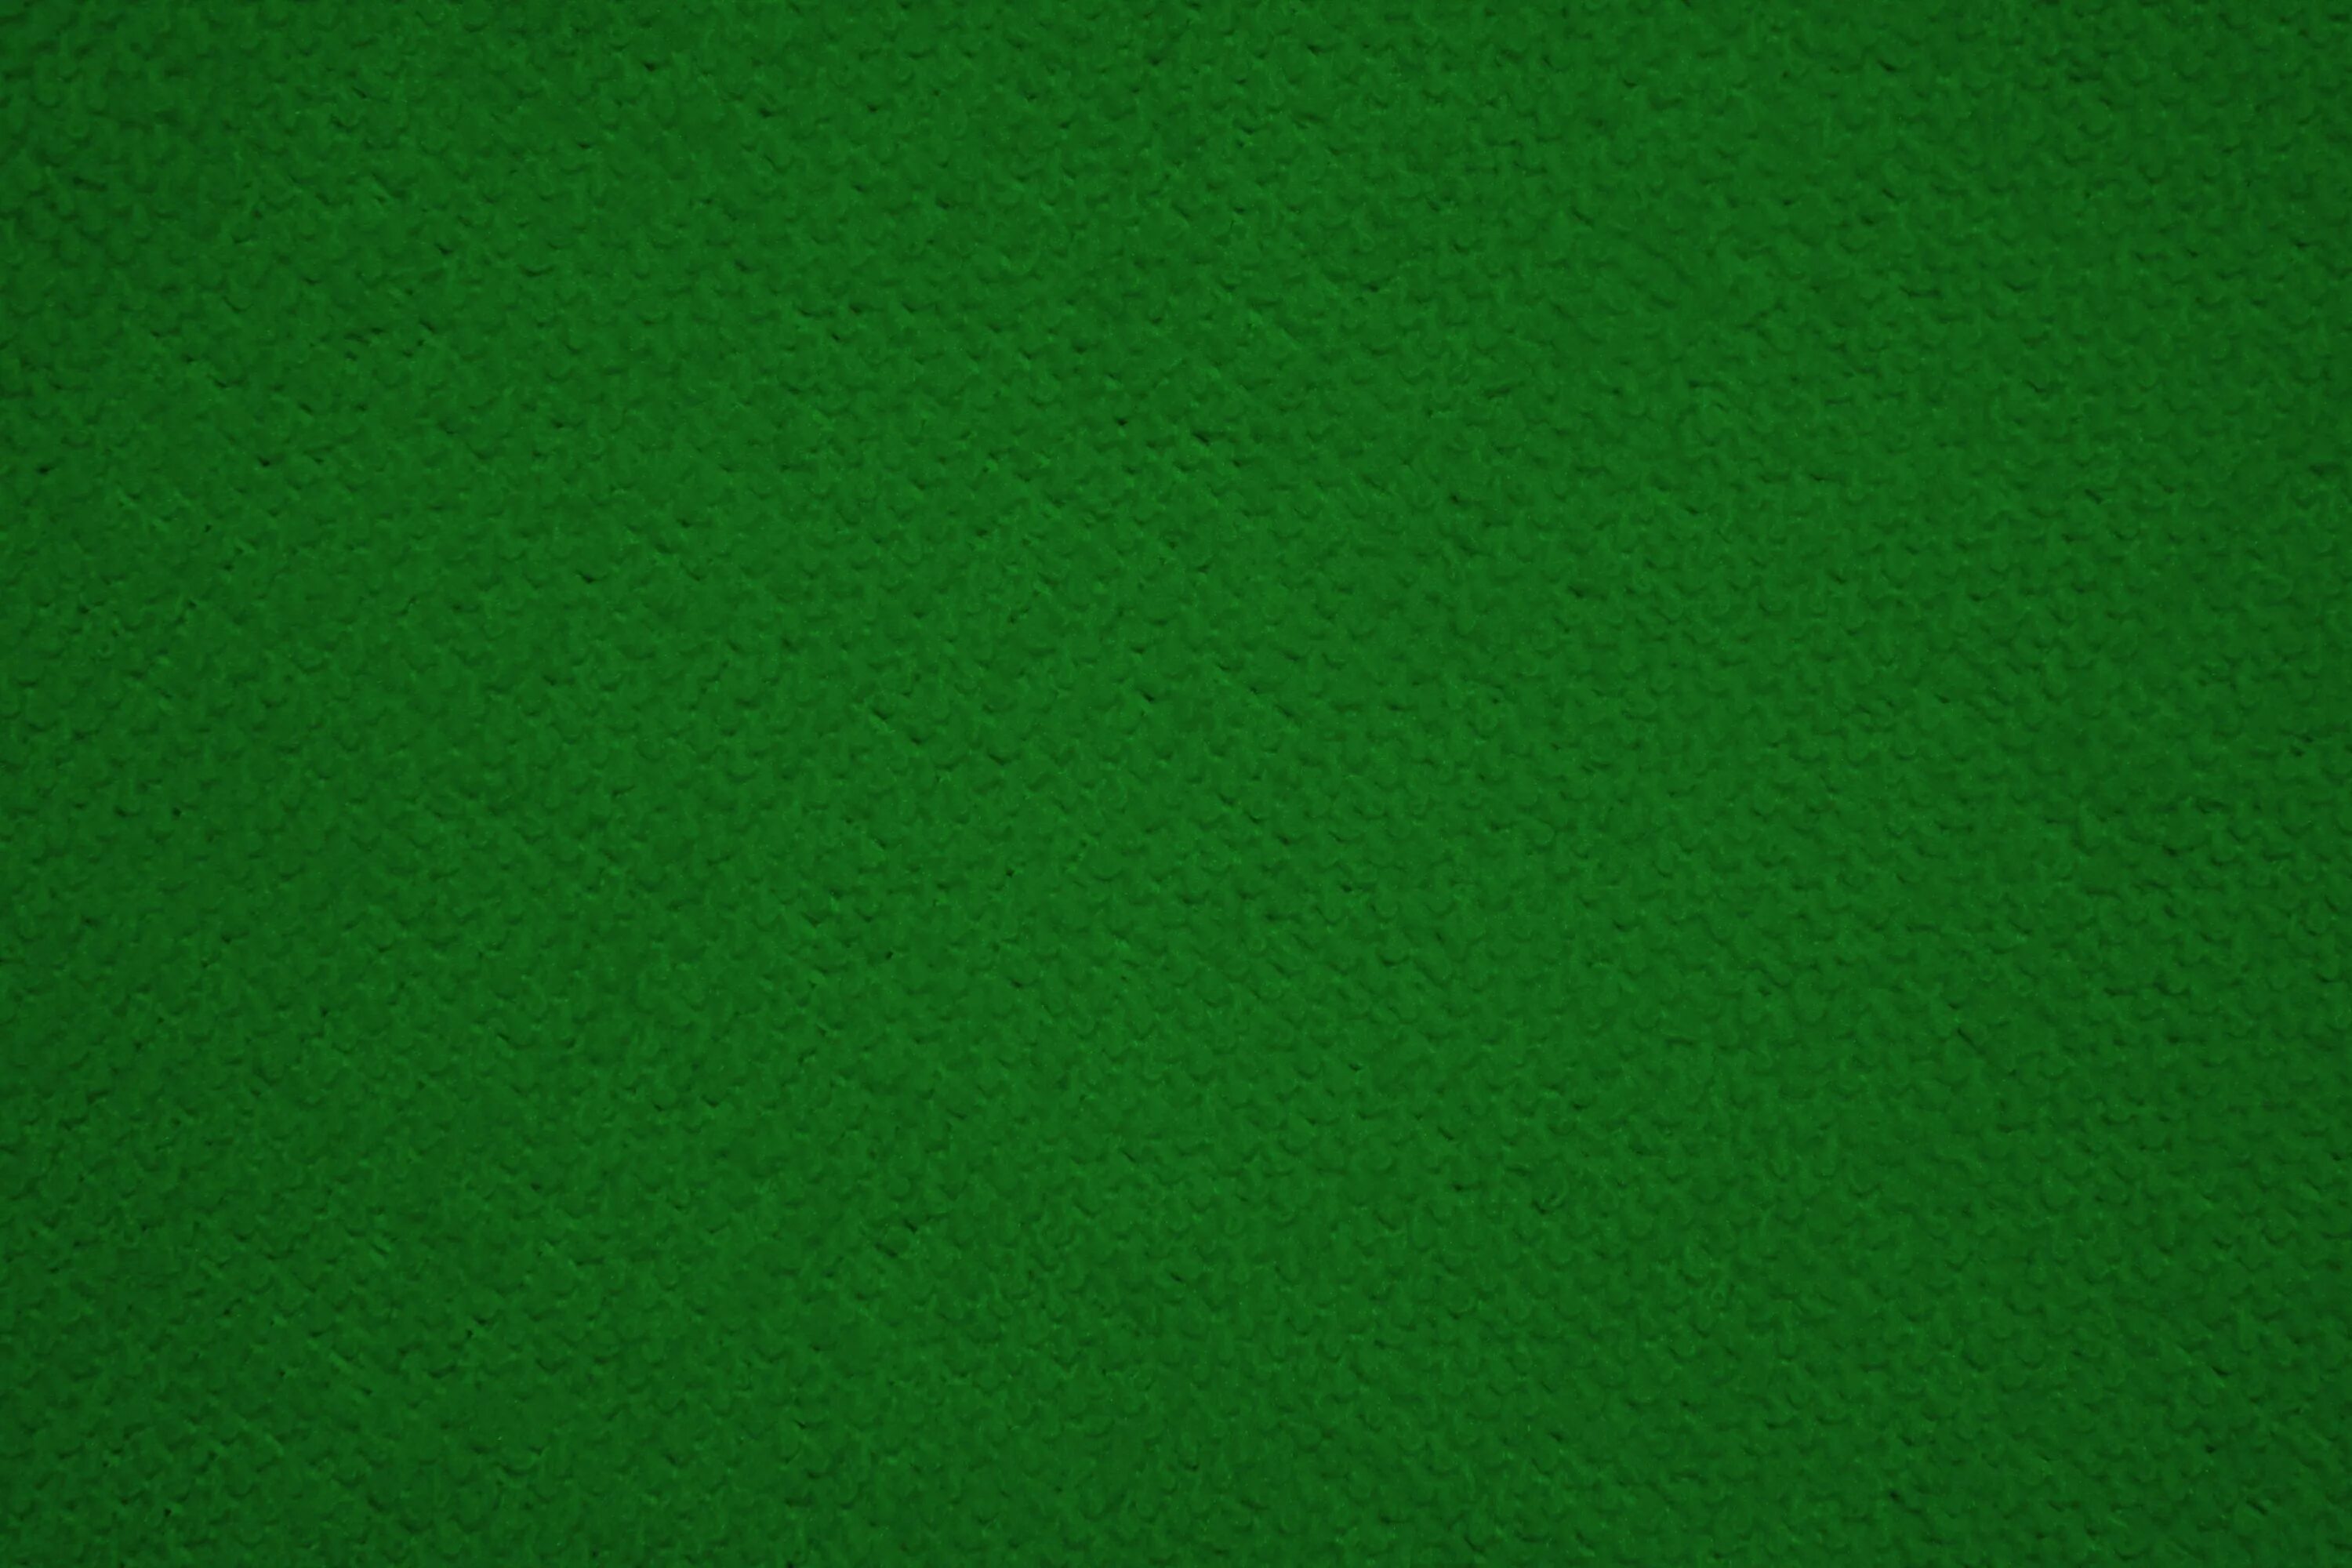 Цвет сукно. Зеленая бумага. Темно зеленый цвет. Тёмно-зелёный цвет. Стол с зеленым сукном.